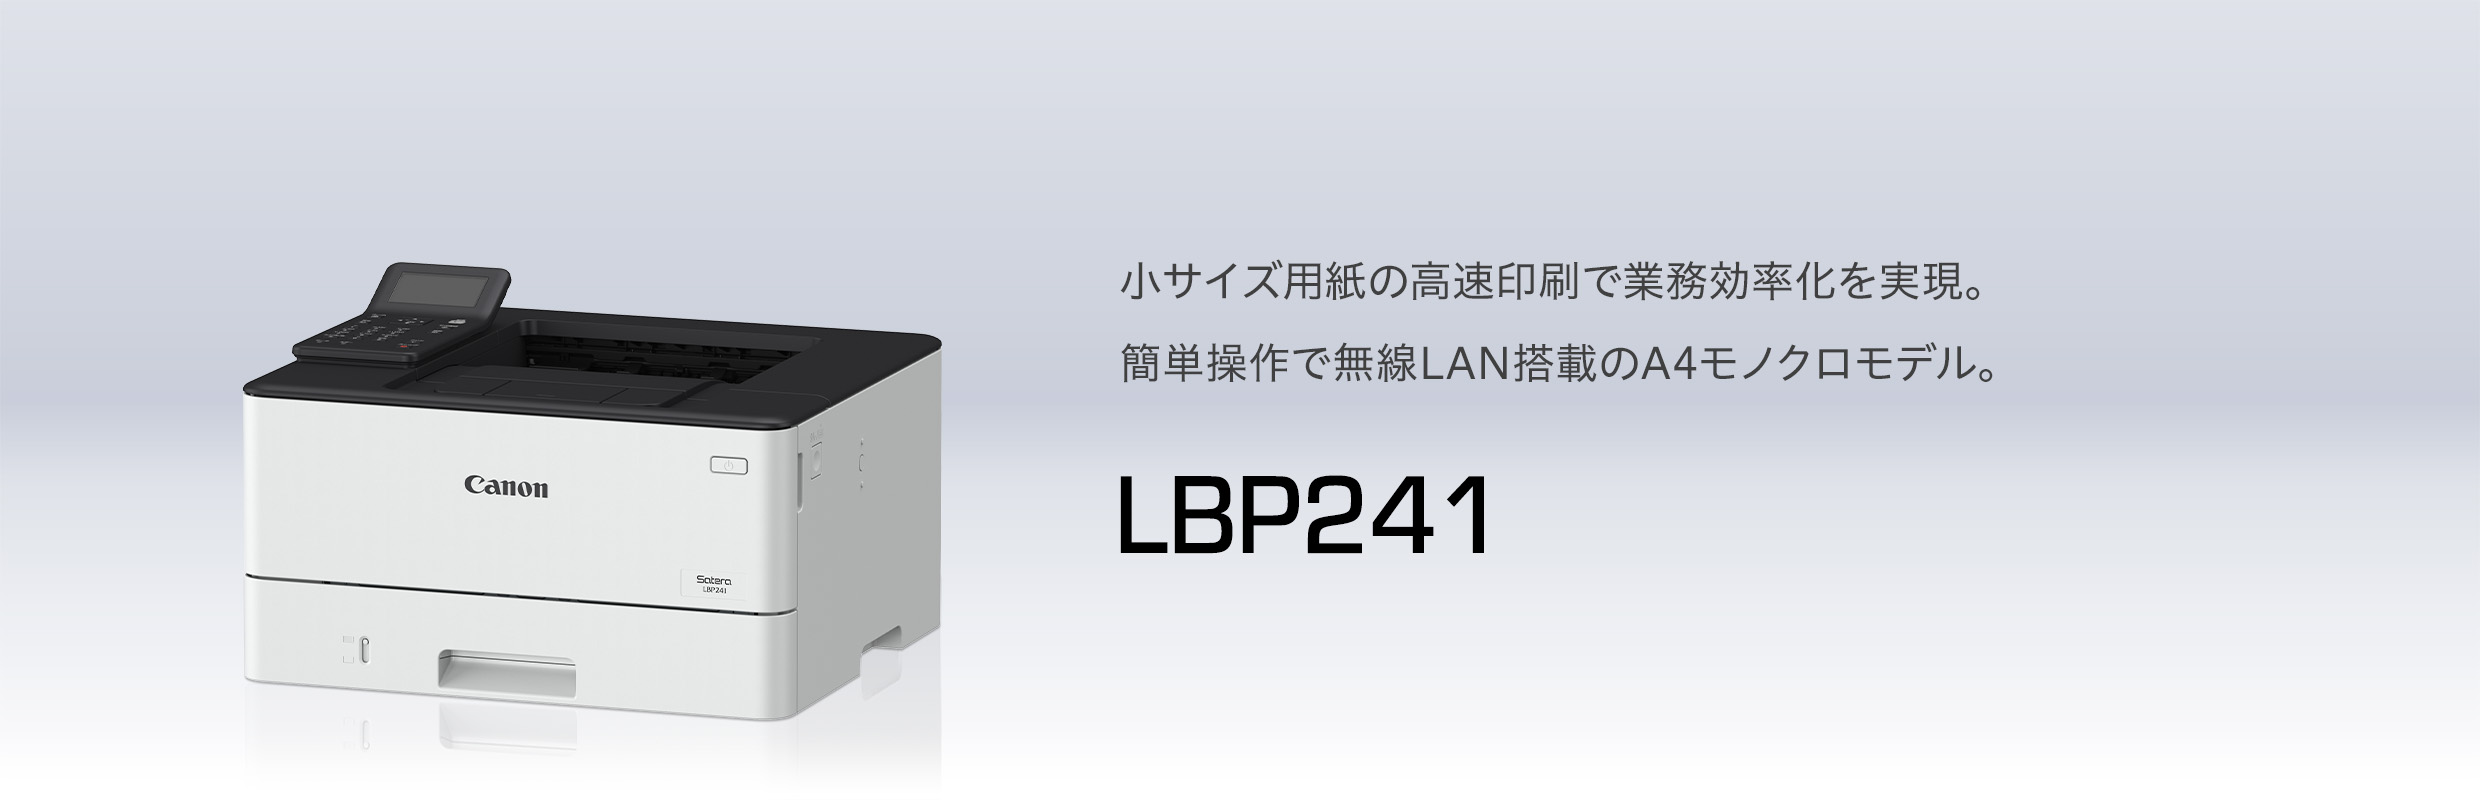 キヤノンマーケティングジャパン Satera LBP241 - お掃除、訪問サービス